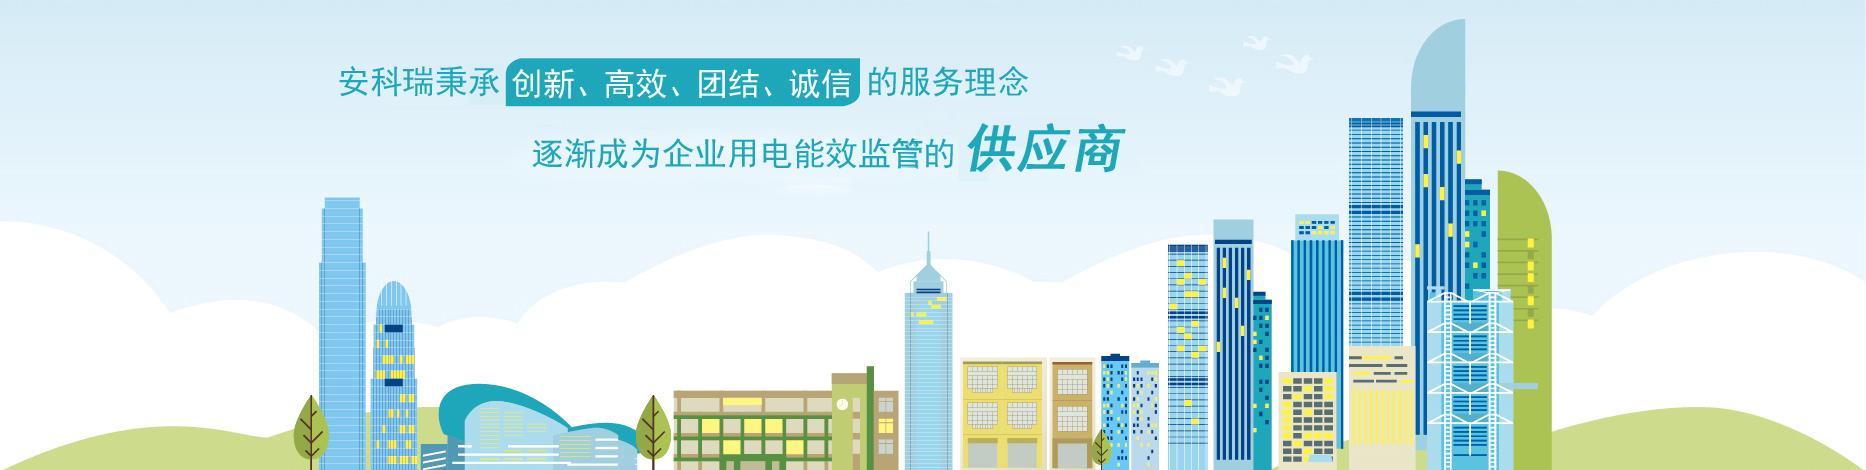 芜湖苏宁环球酒店电力管理系统的研究及应用